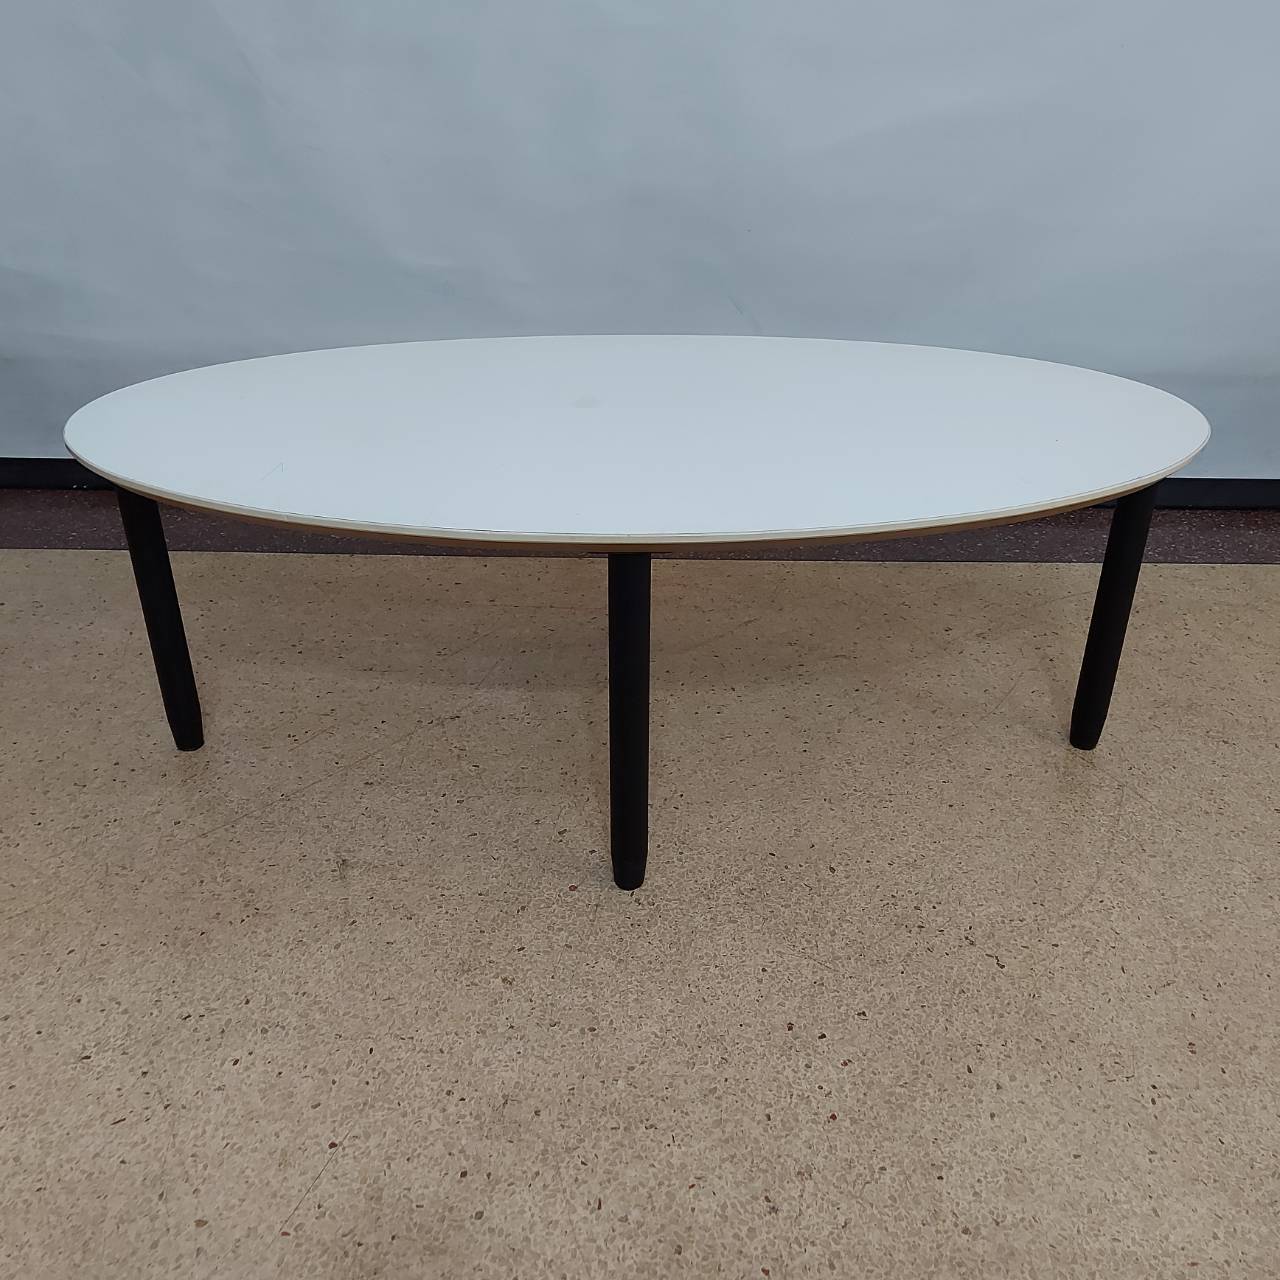  โต๊ะกลางหน้าวงรีสีขาว